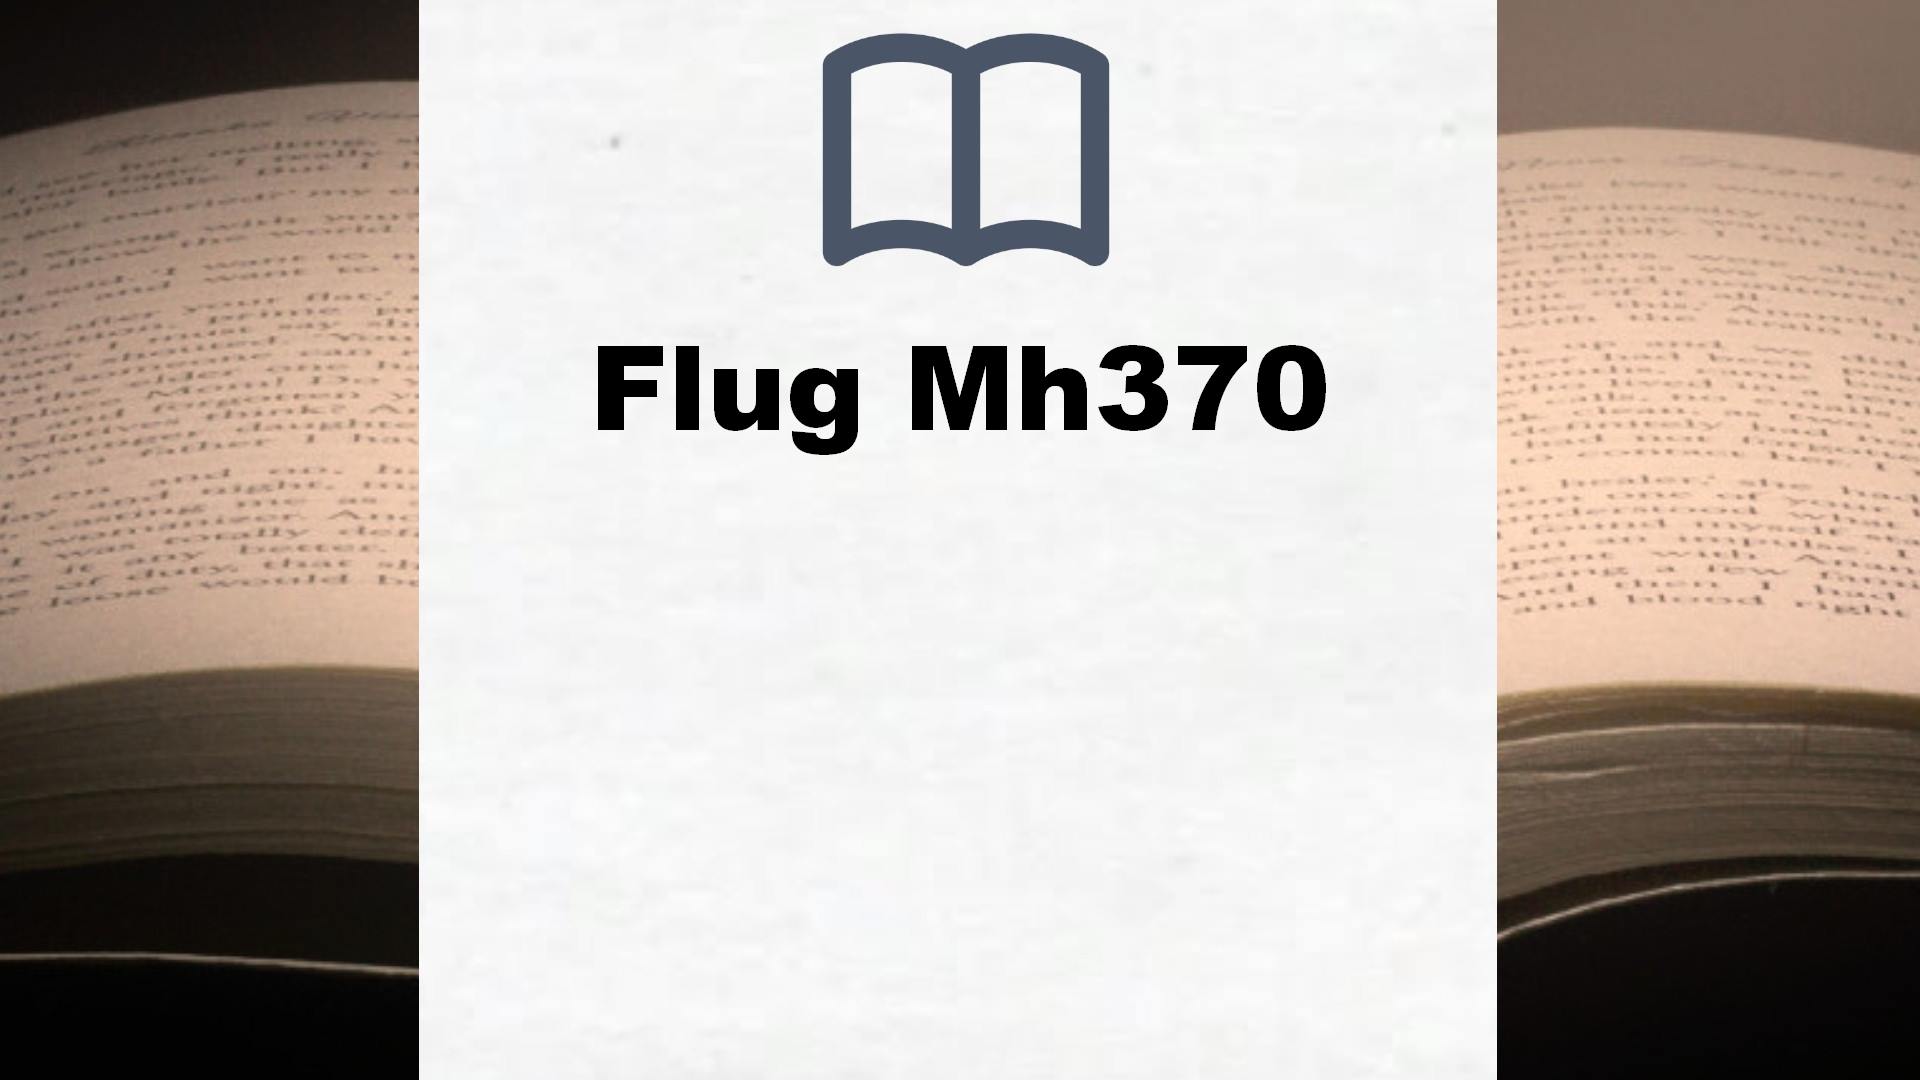 Bücher über Flug Mh370